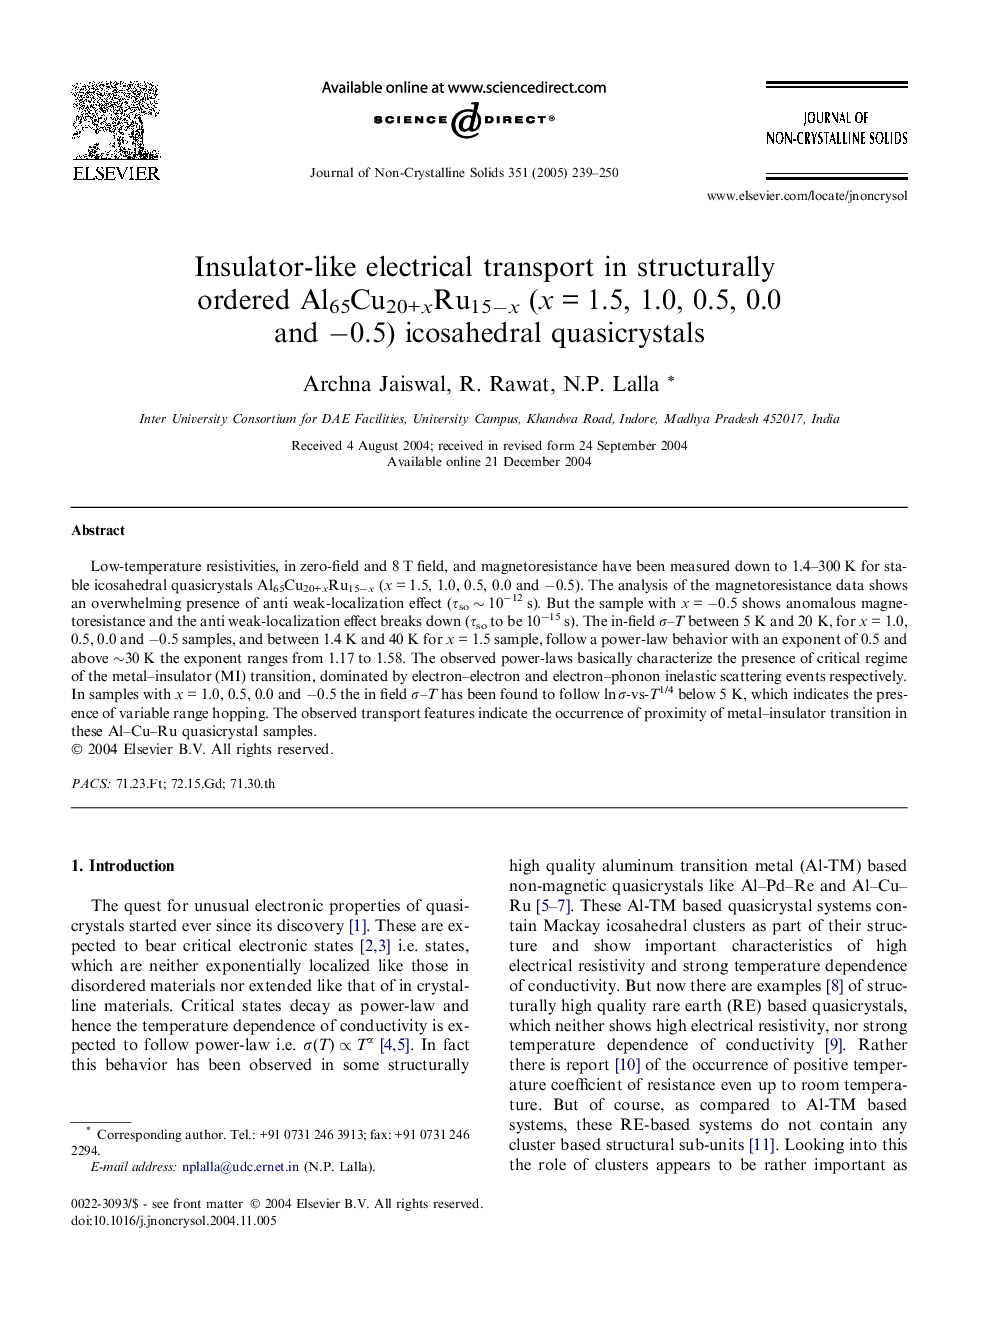 Insulator-like electrical transport in structurally ordered Al65Cu20+xRu15âx (xÂ =Â 1.5, 1.0, 0.5, 0.0 and â0.5) icosahedral quasicrystals